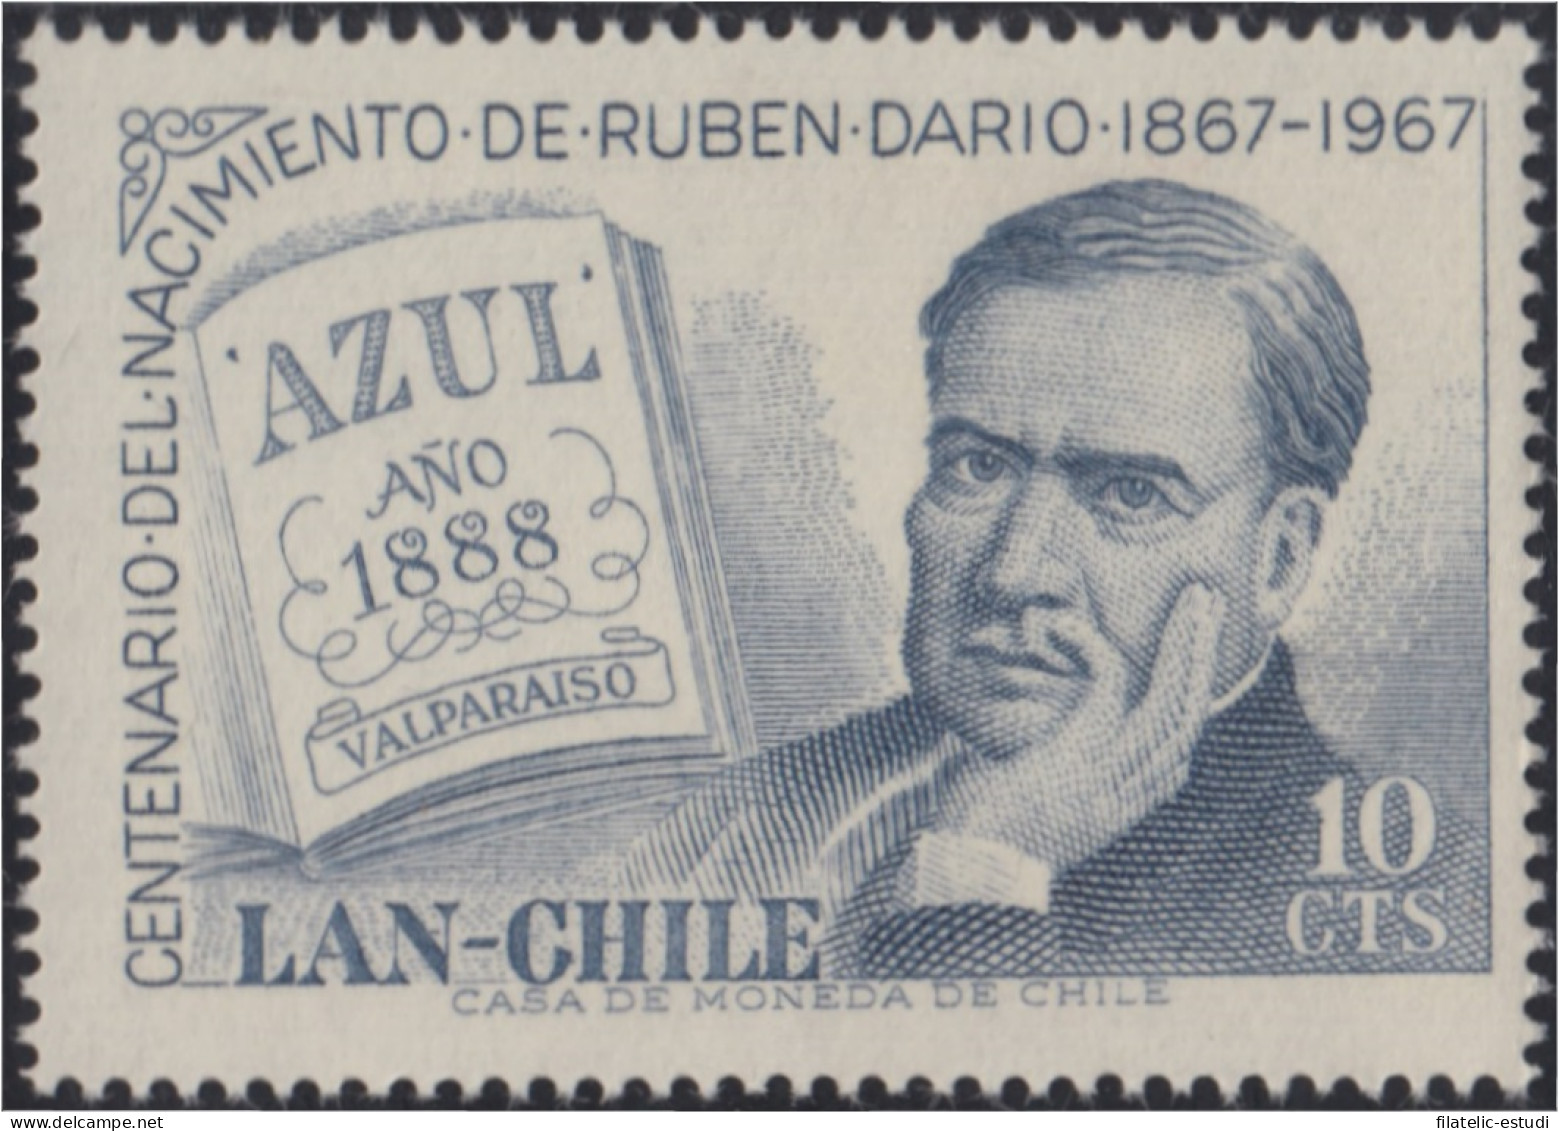 Chile A- 238 1967 Poeta Latinoamericano Rubén Darío MH - Chili